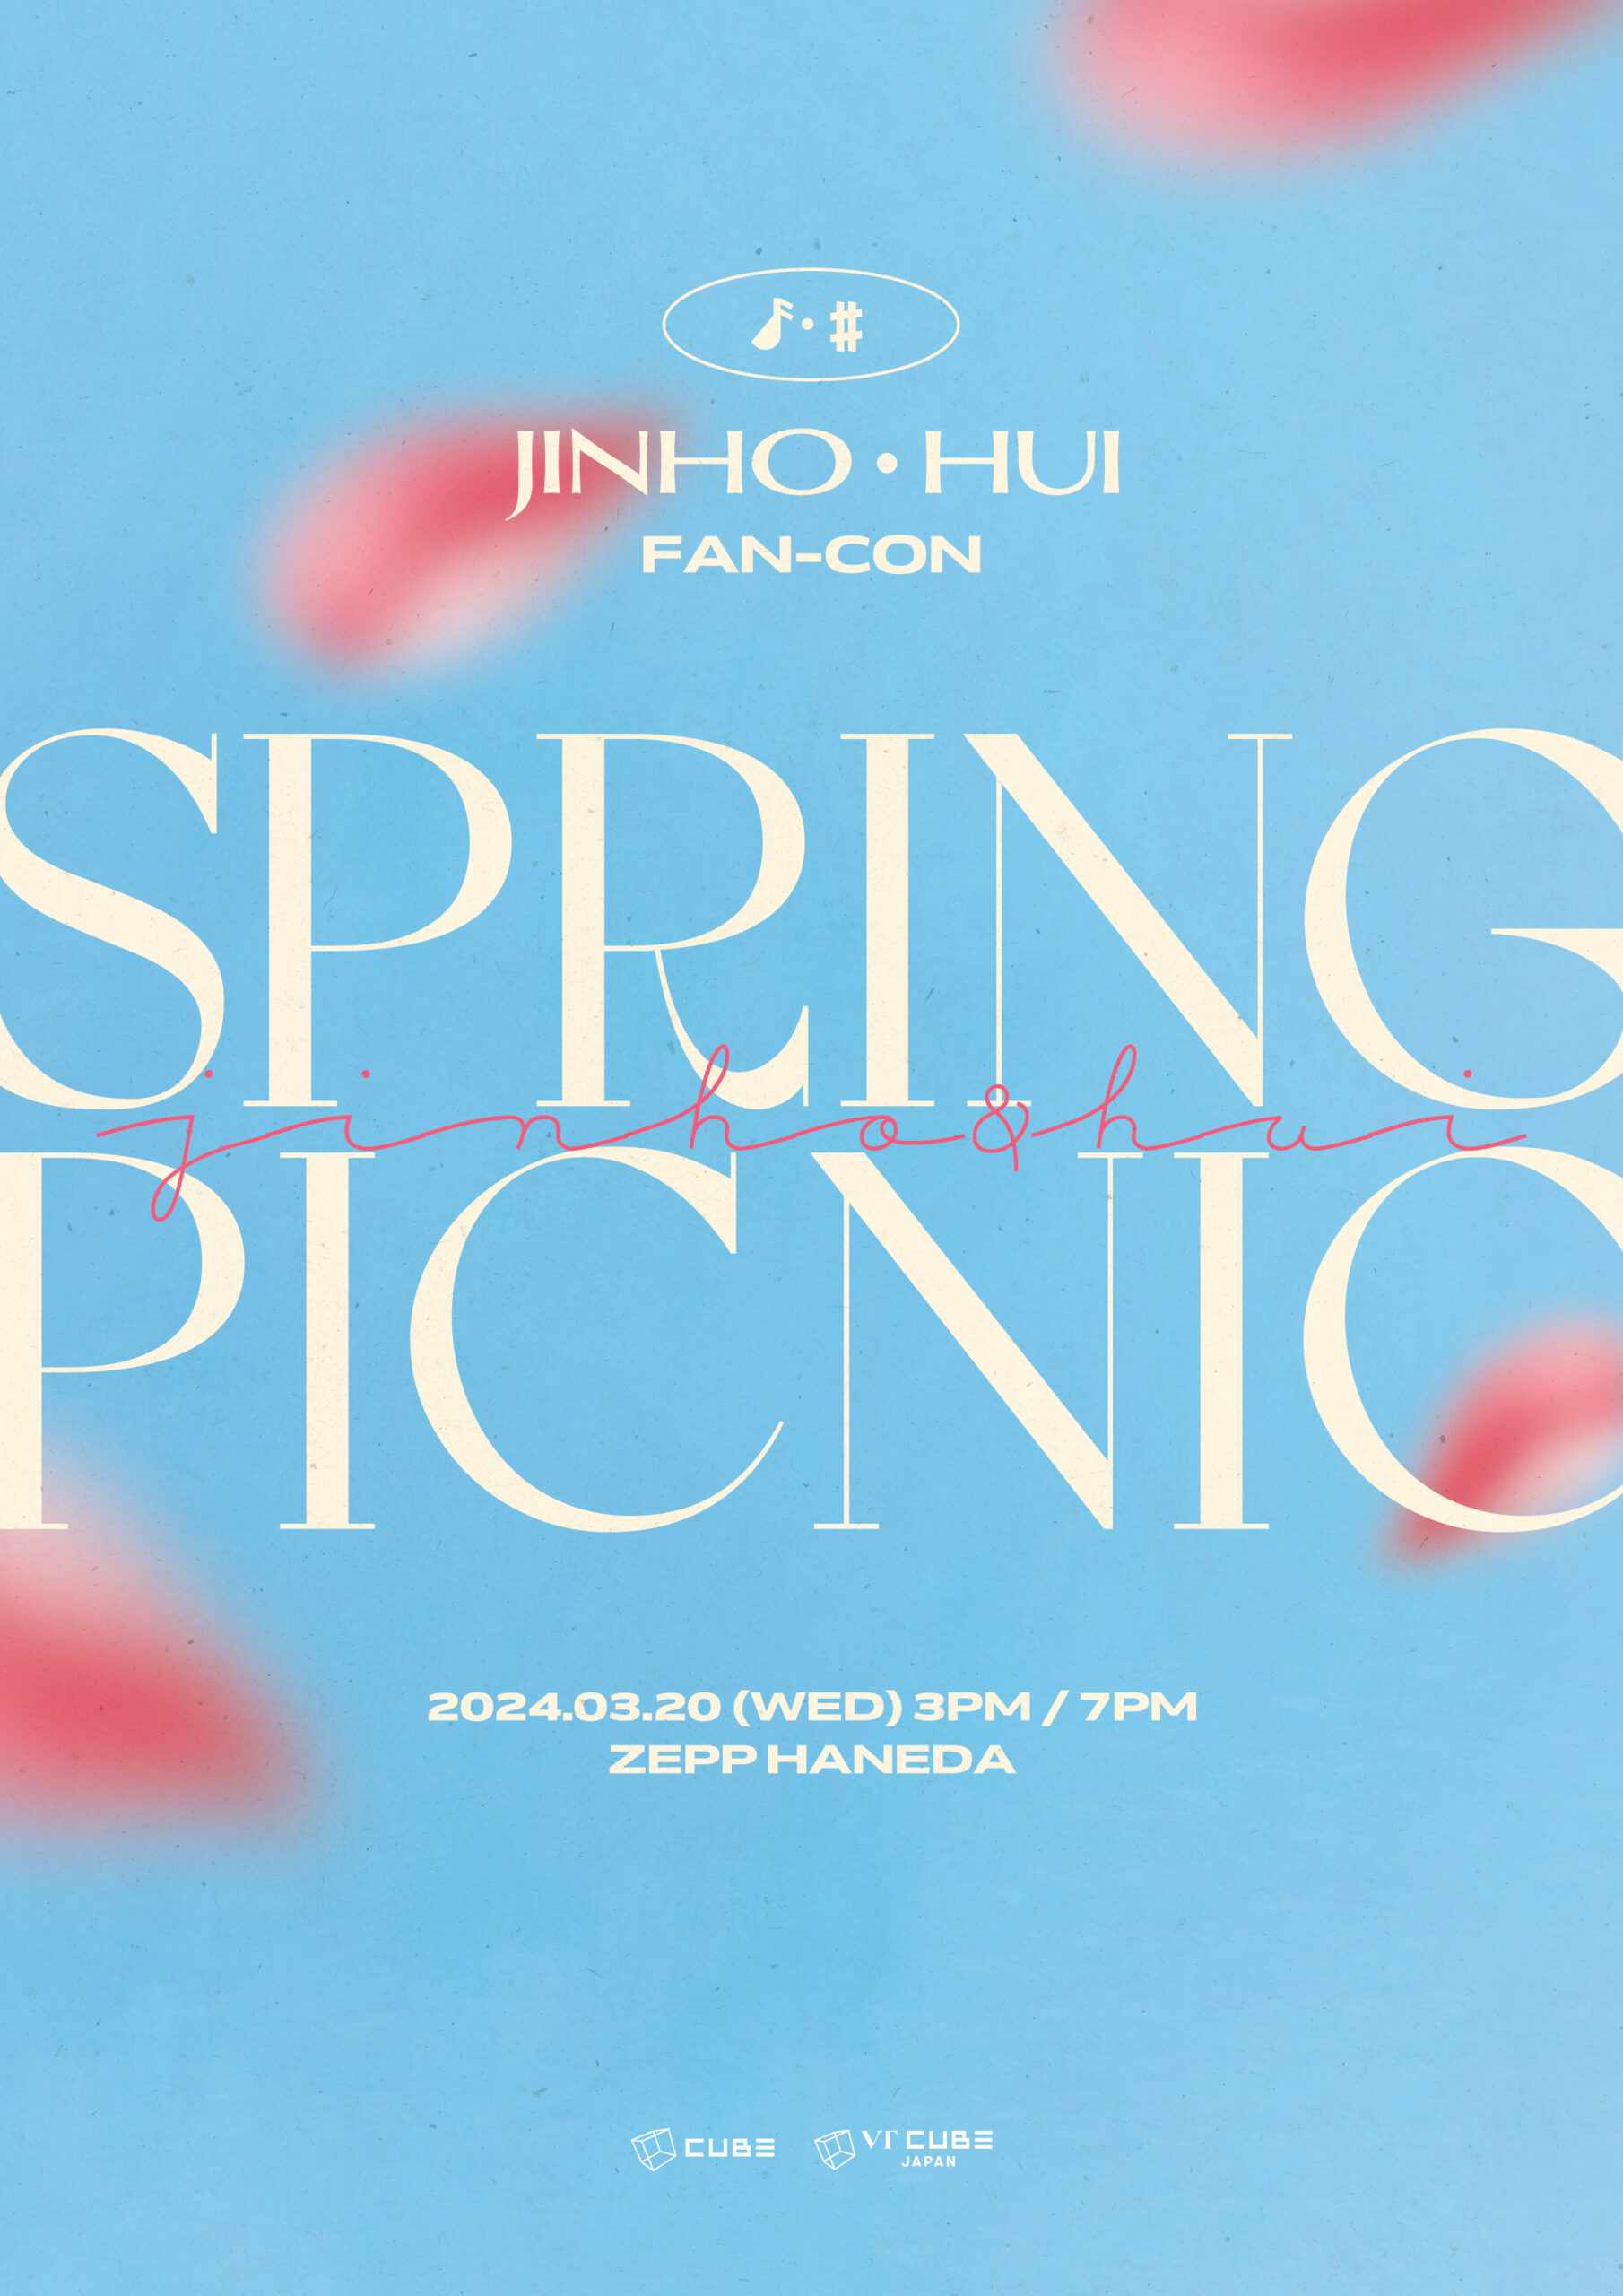 『JINHO HUI FAN-CON [SPRING PICNIC]』